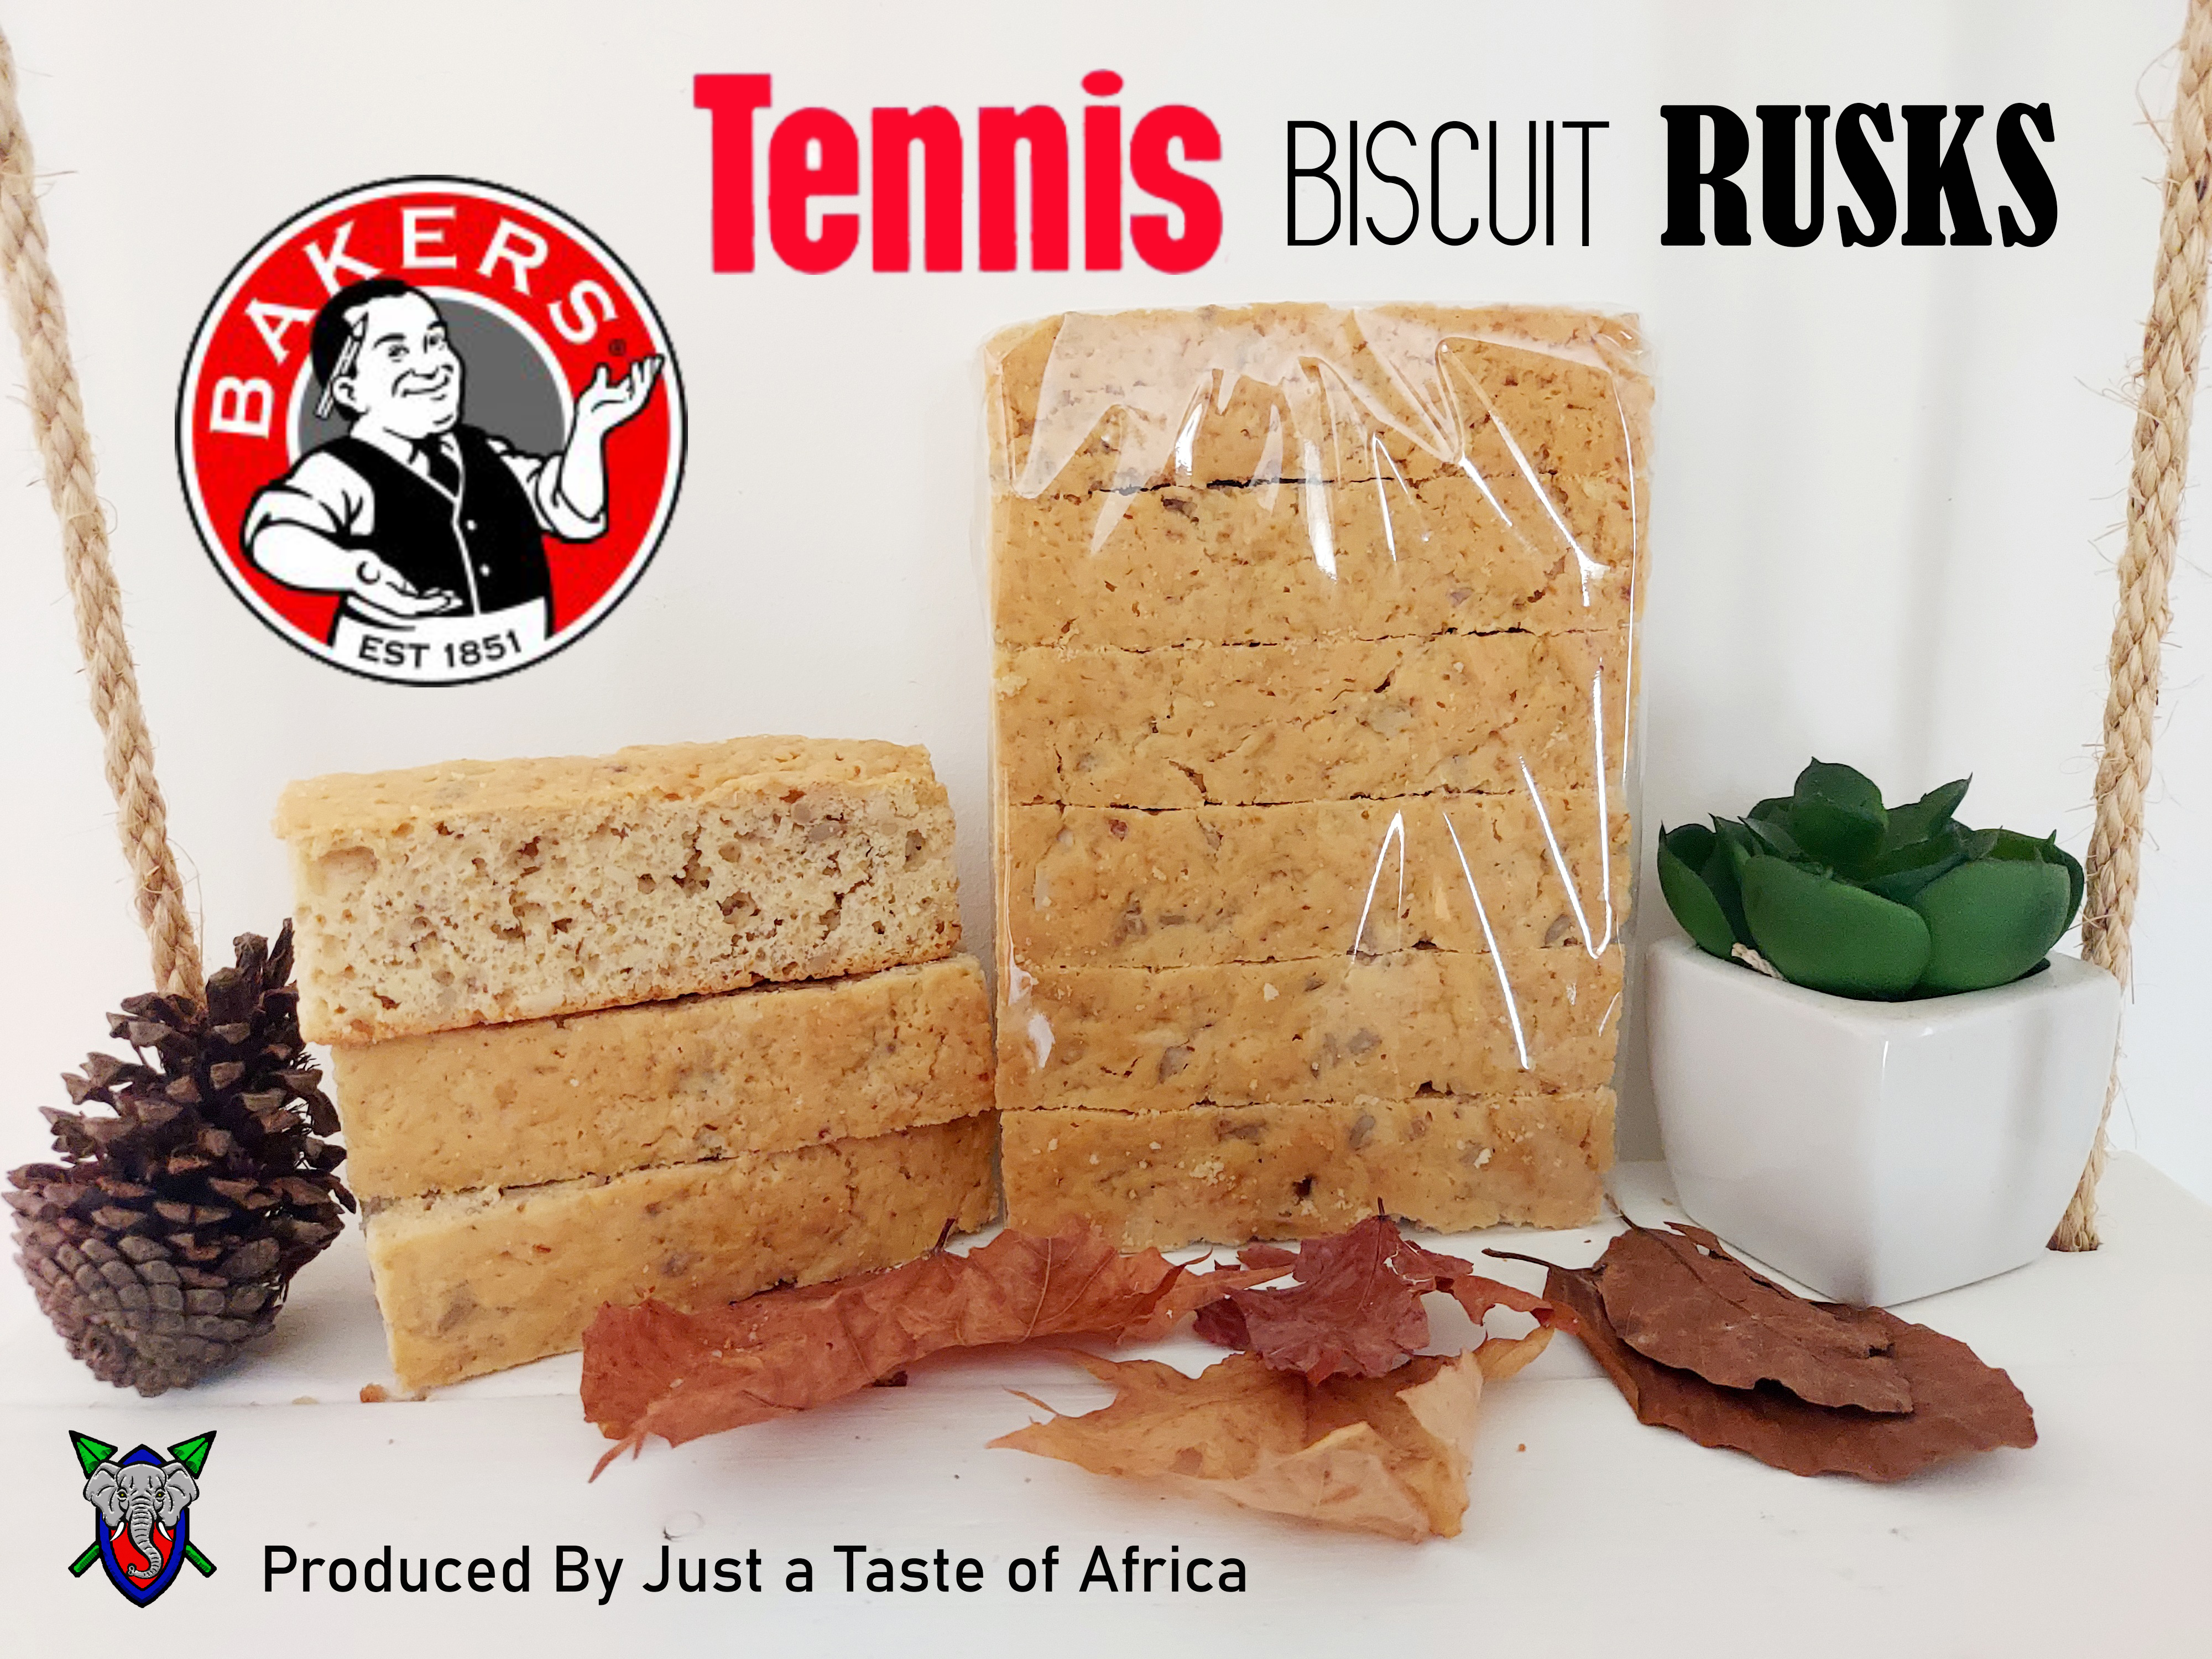 Tennis Biscuit Rusks